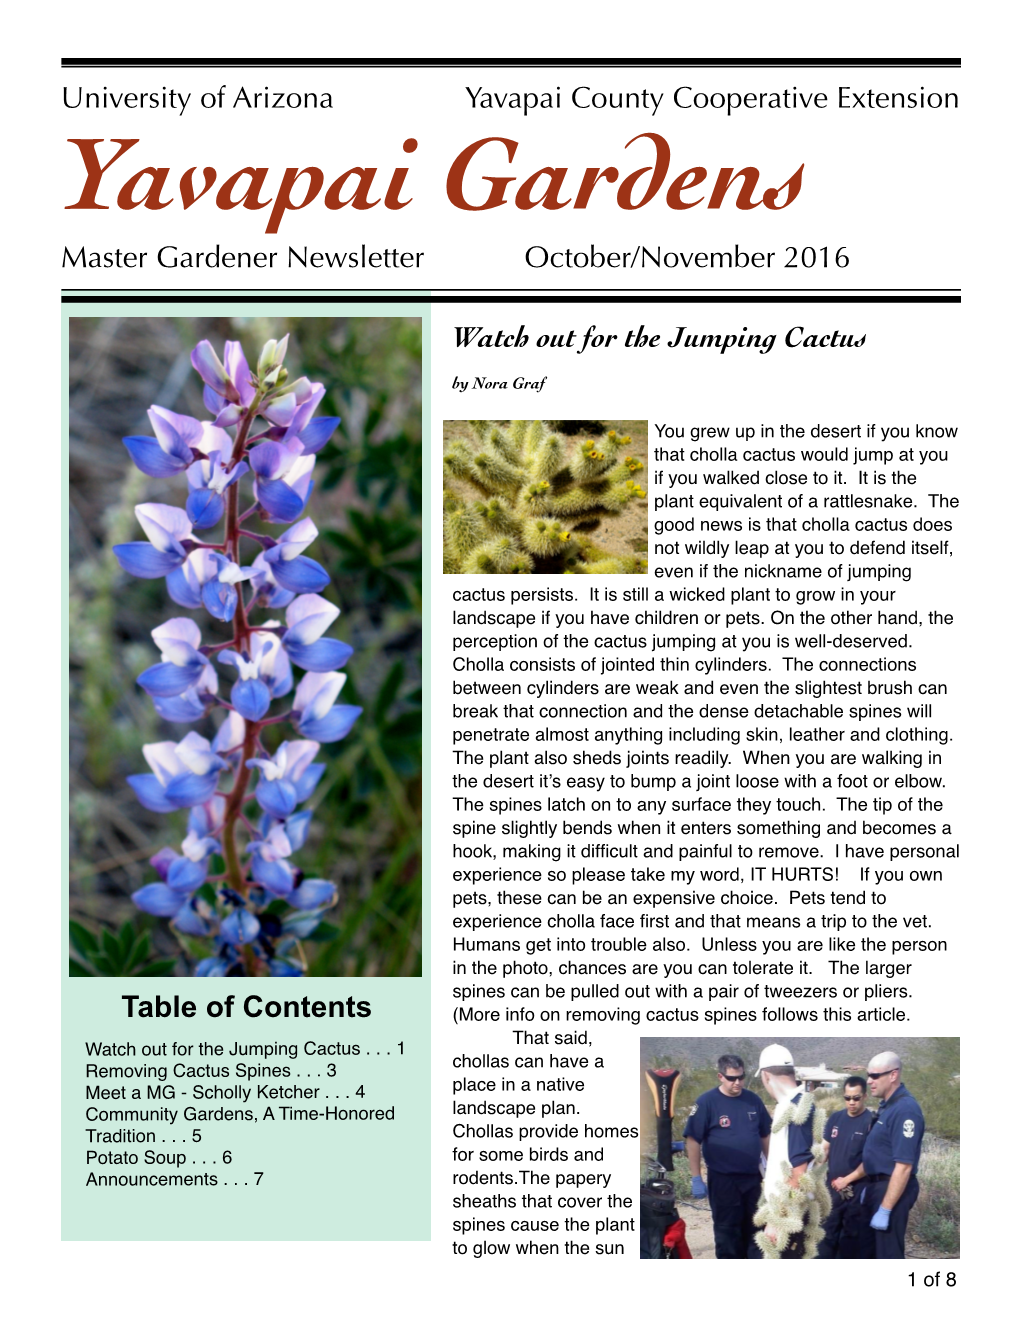 Yavapai Gardens Master Gardener Newsletter October/November 2016